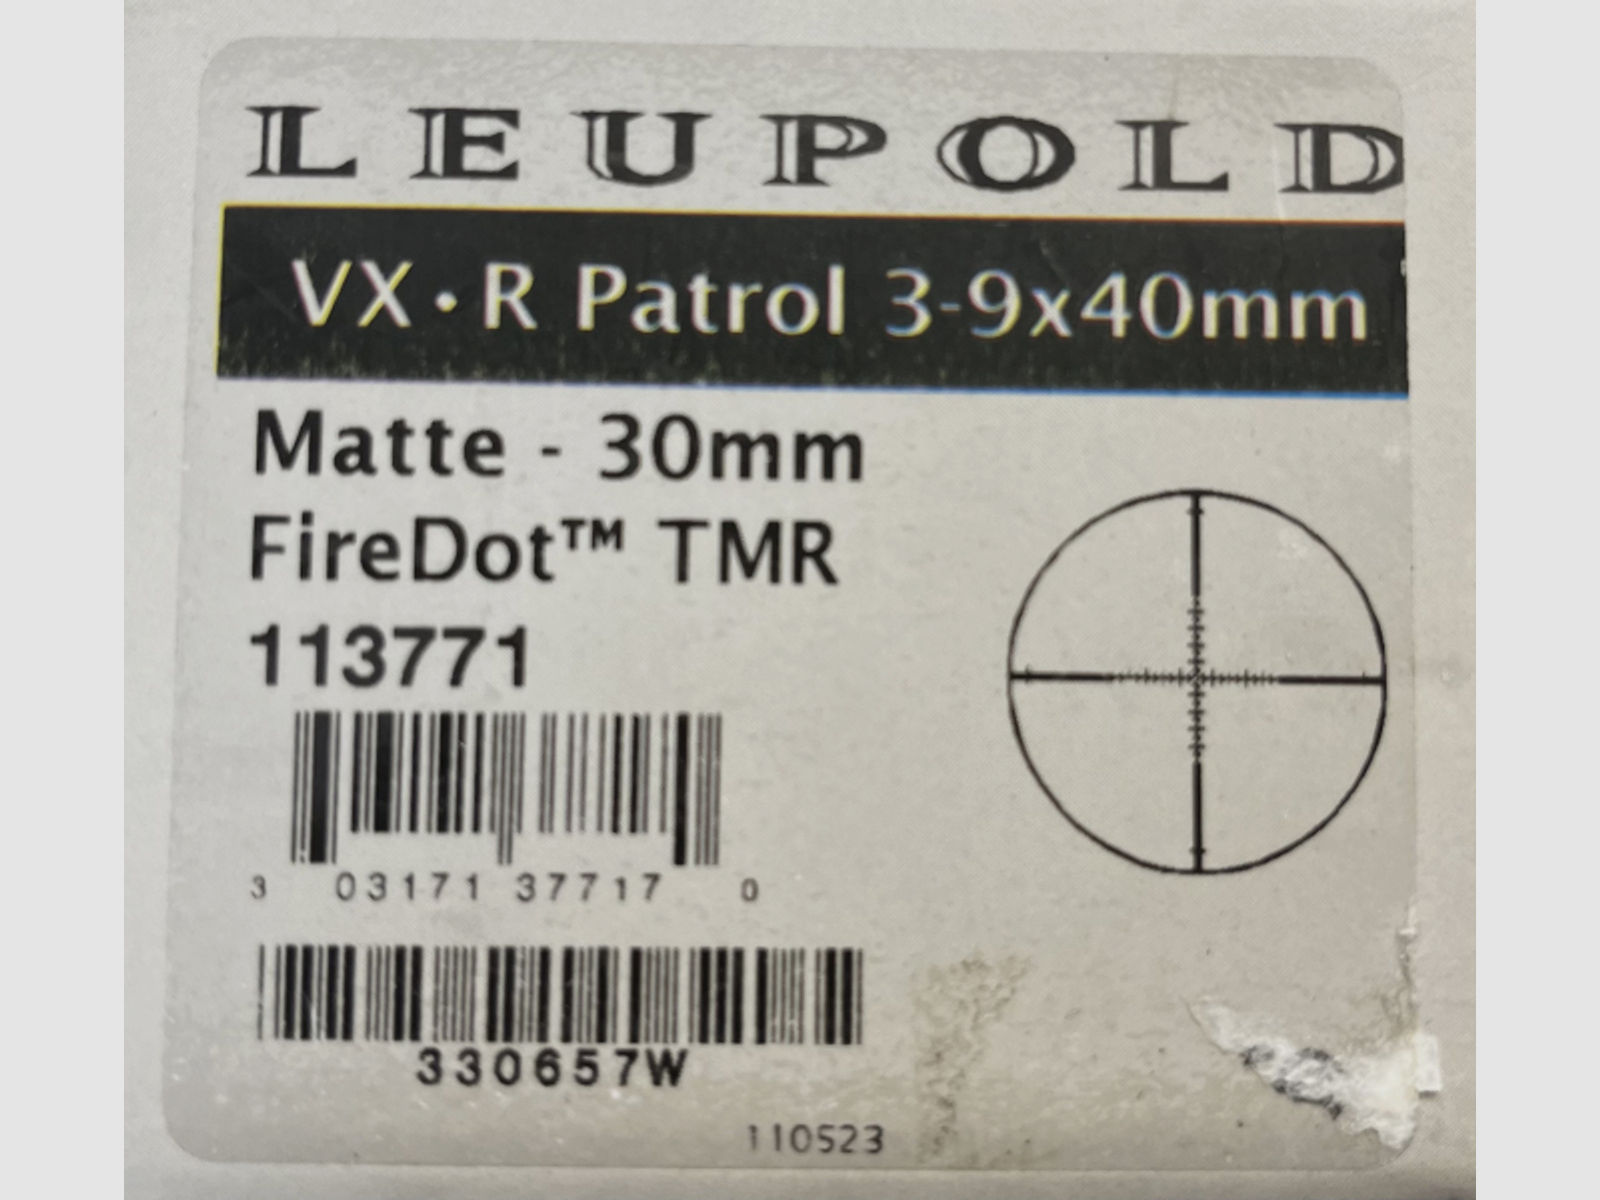 Leupold 3-9x40 Schmeißsser SMP Montage für AR 15 oder Ähnliches